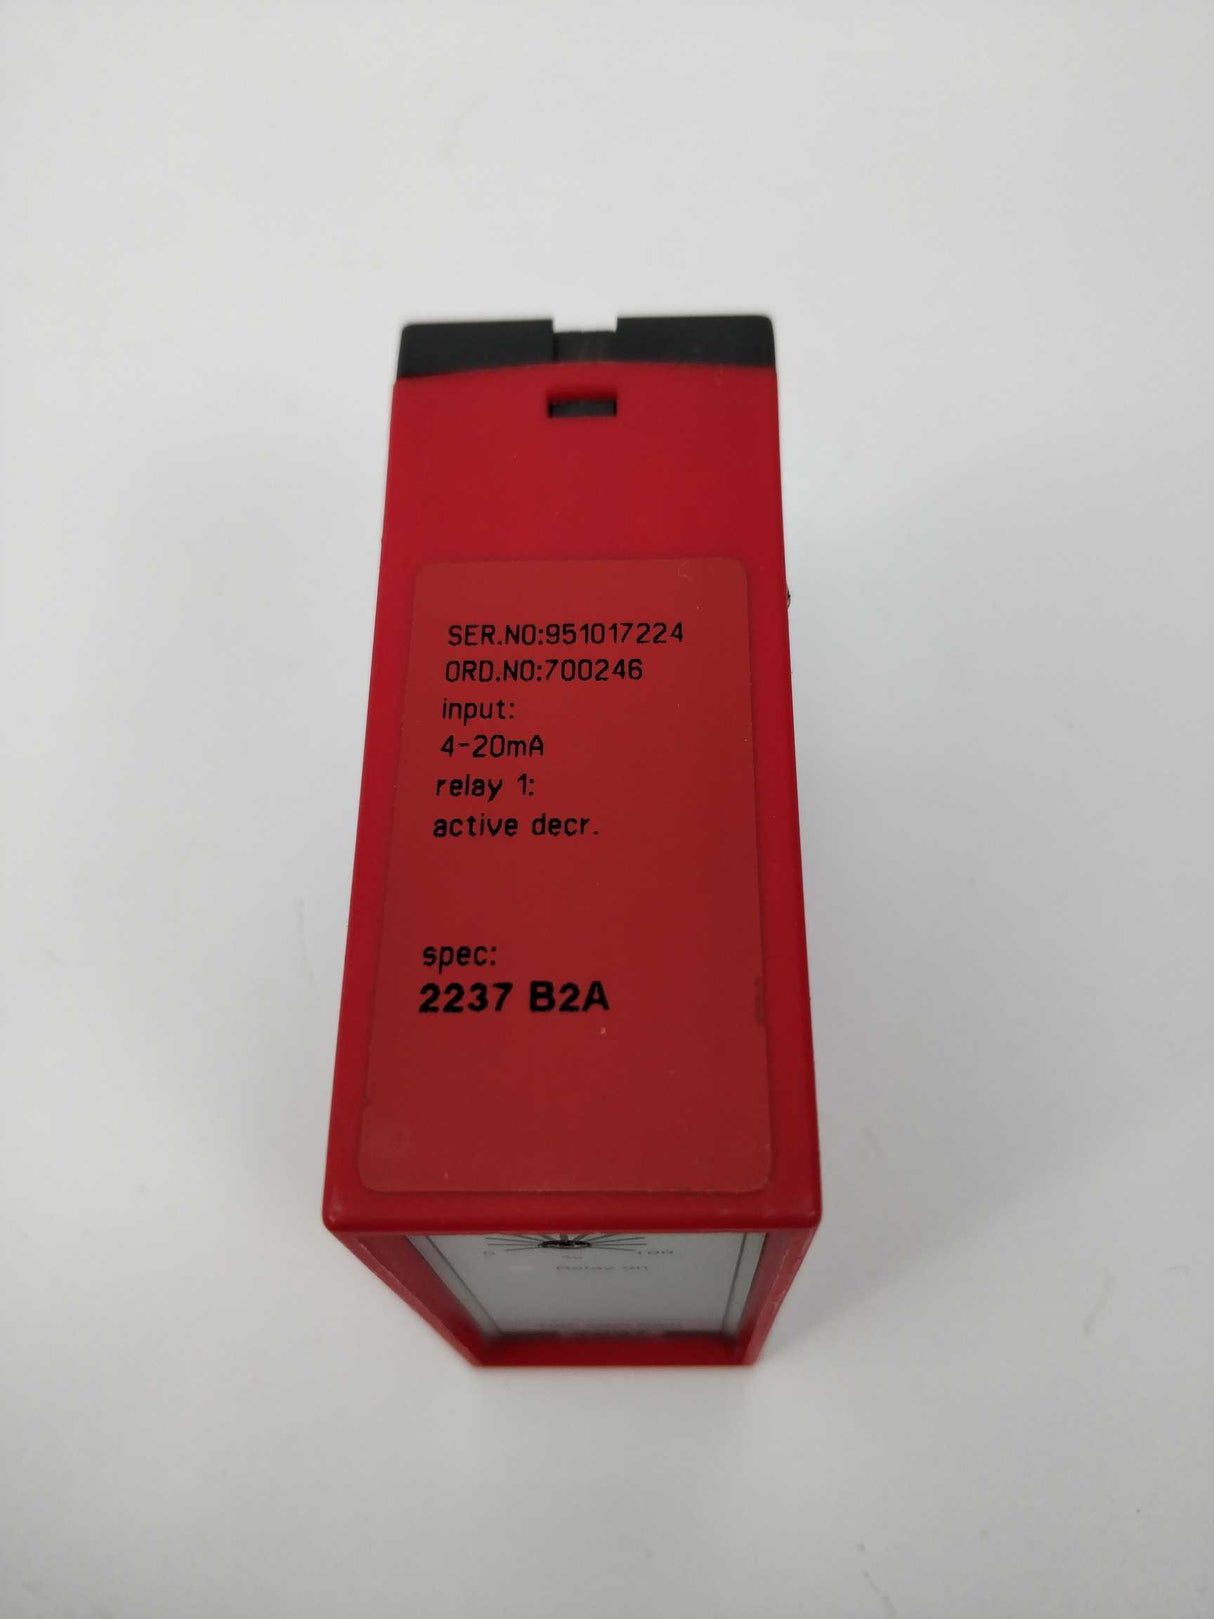 PR Electronics 2237 B2A Serial No. 951017224 Trip Amplifier